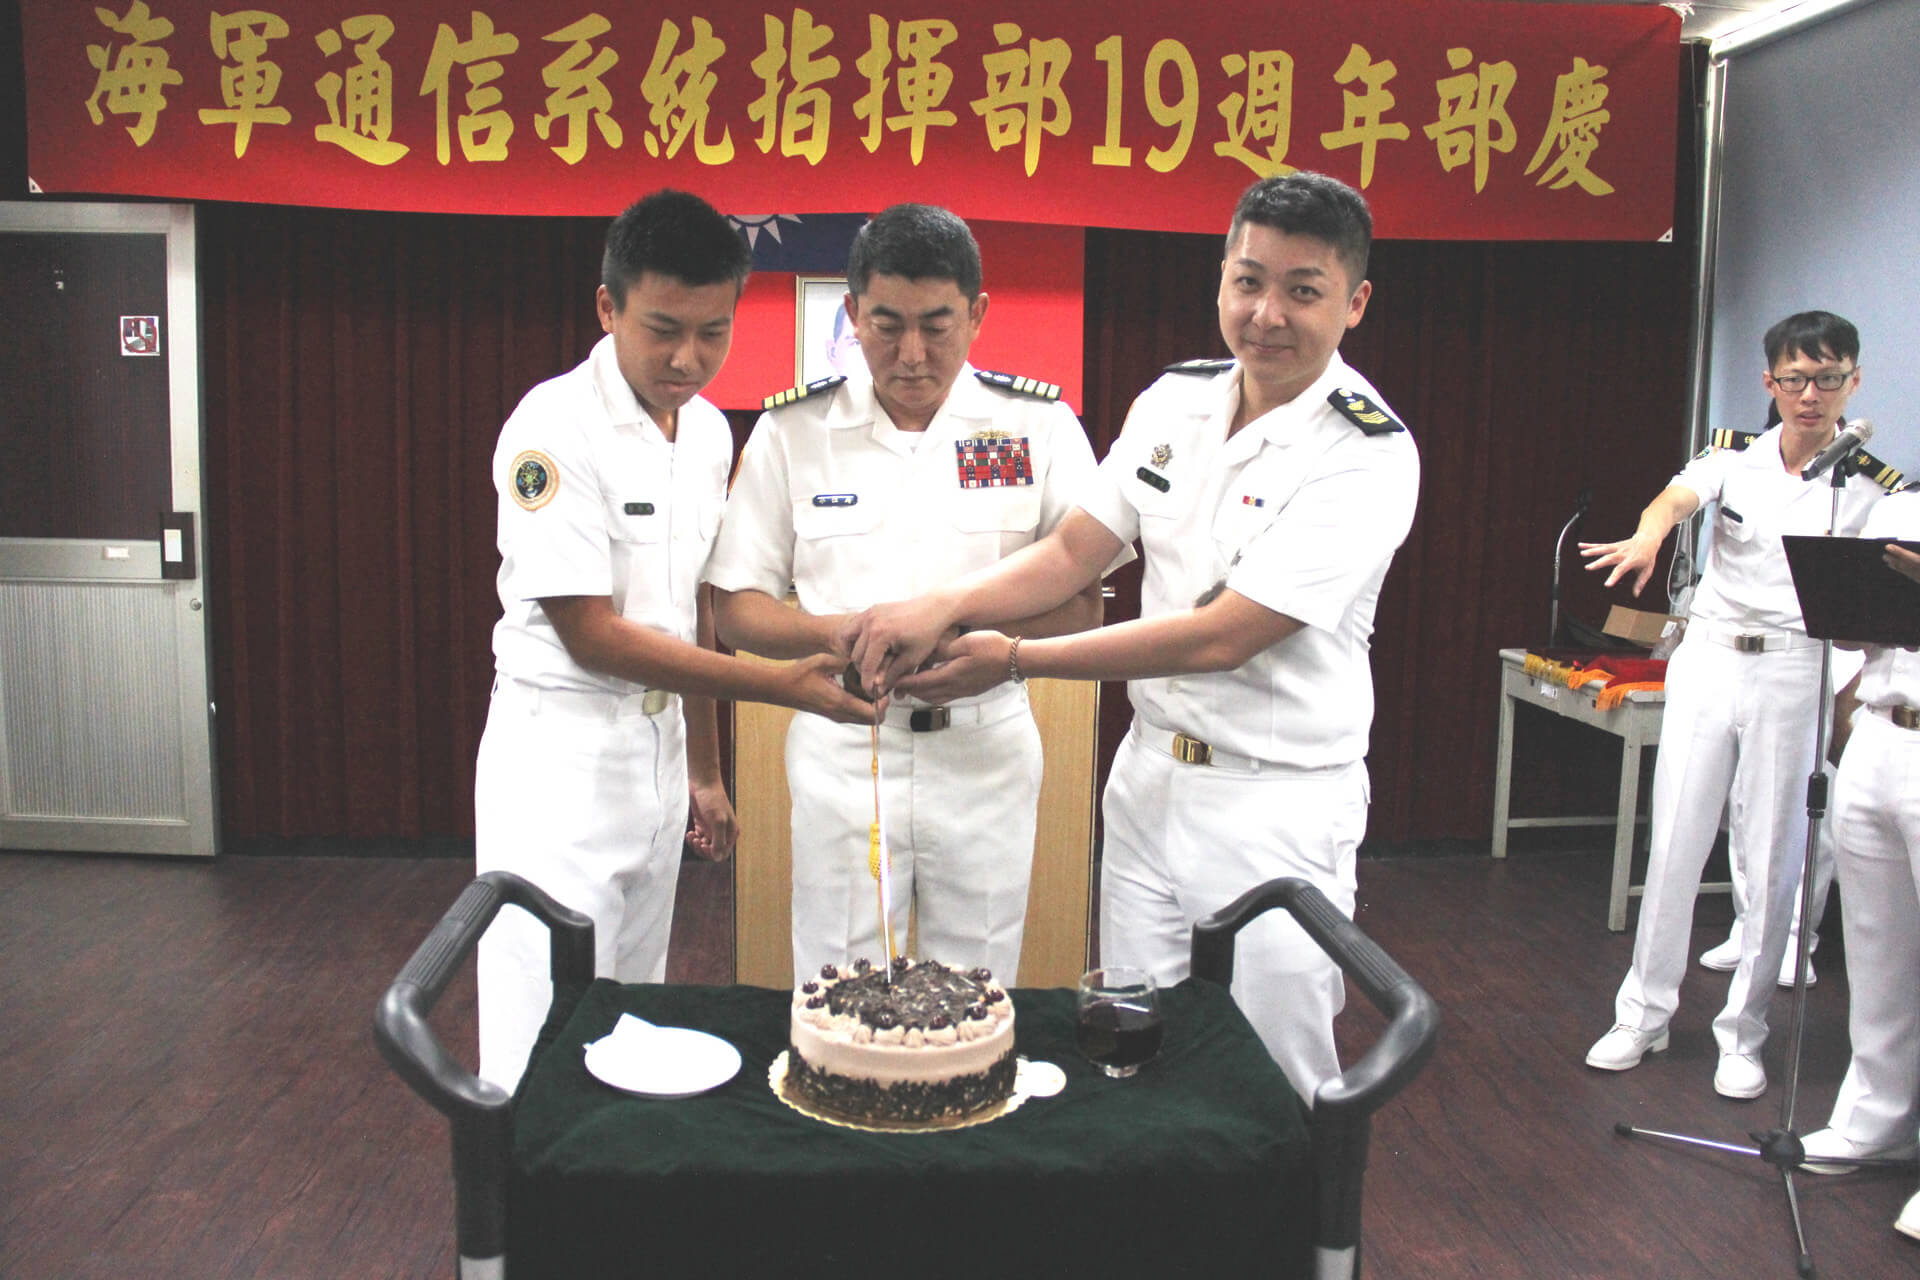 海軍通信系統指揮部19週年部慶指揮官與9、10月壽星切生日蛋糕。